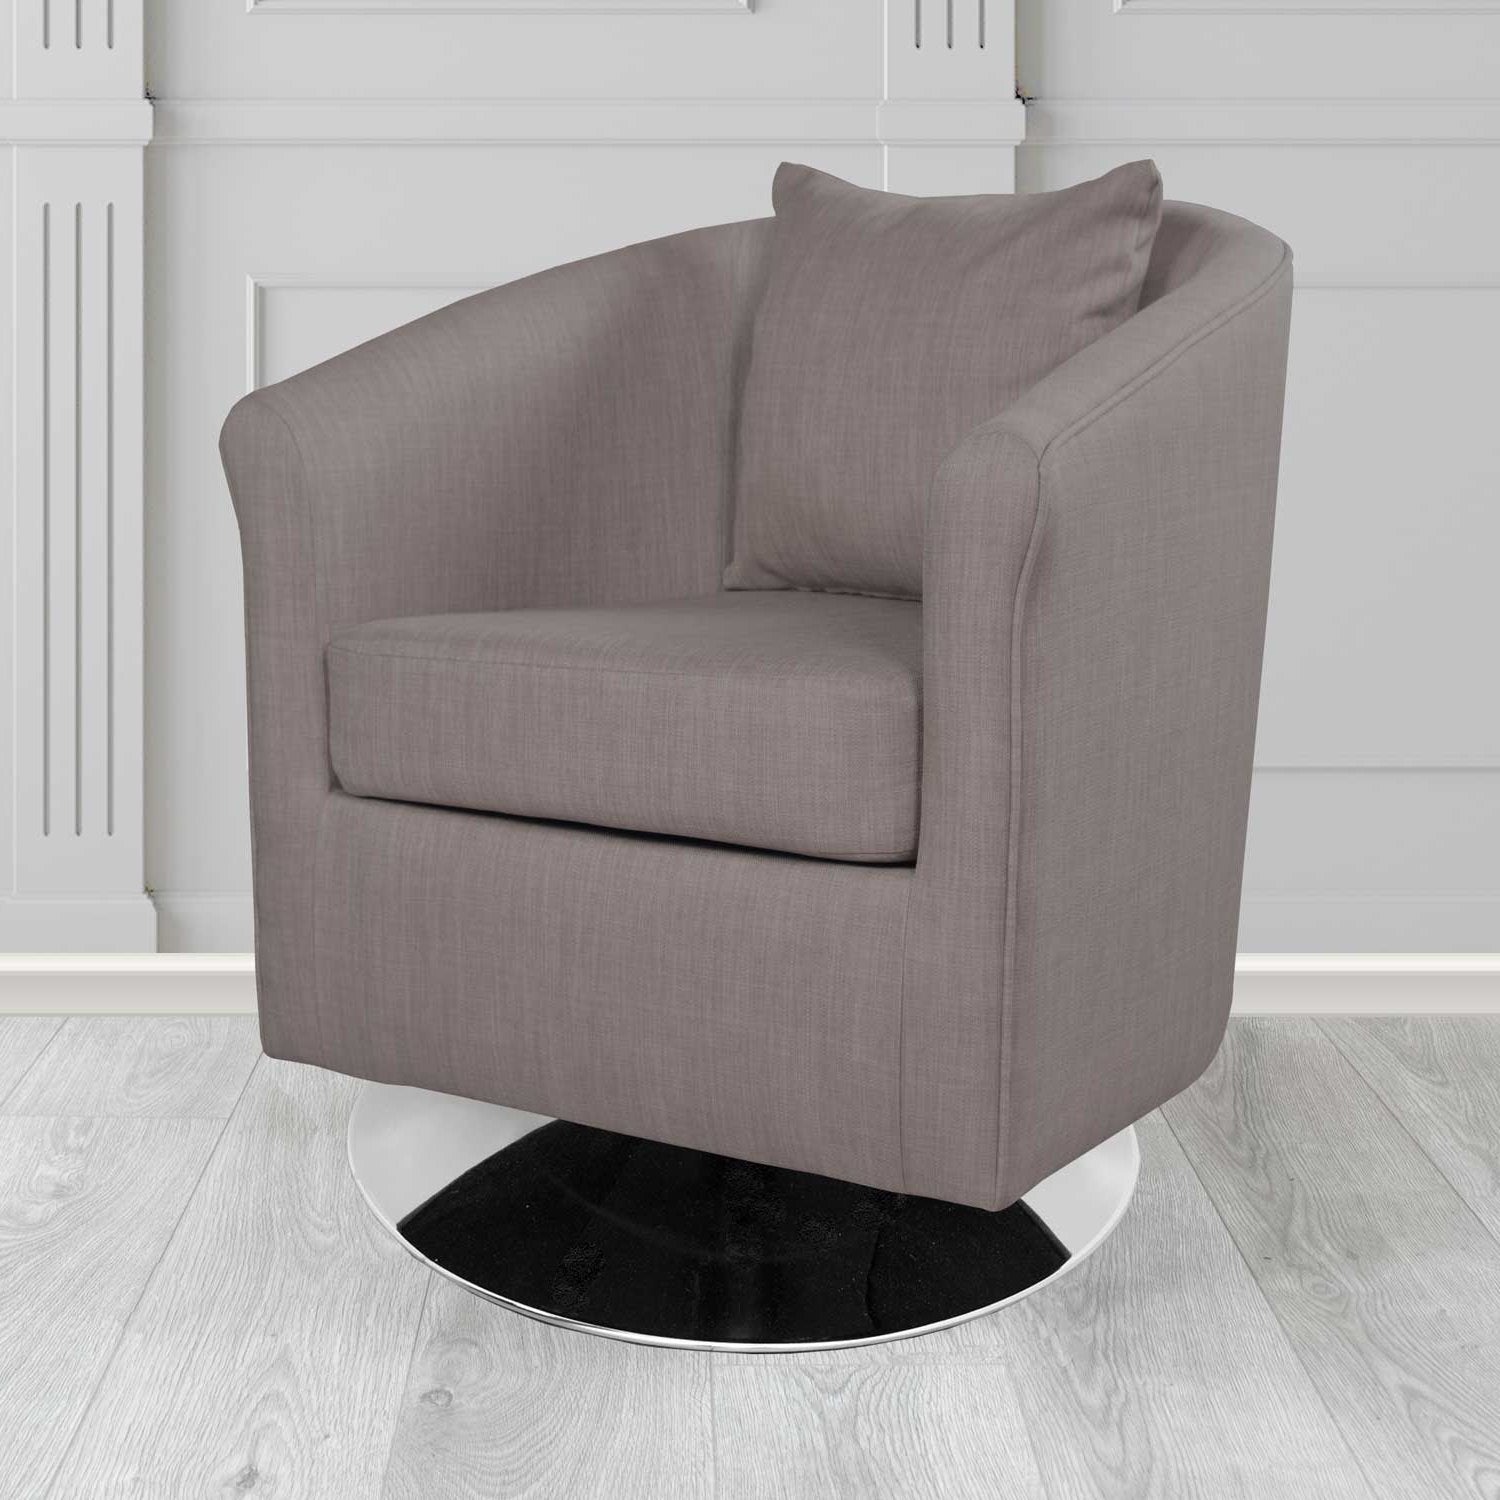 St Tropez Charles Slate Plain Linen Fabric Swivel Tub Chair - The Tub Chair Shop